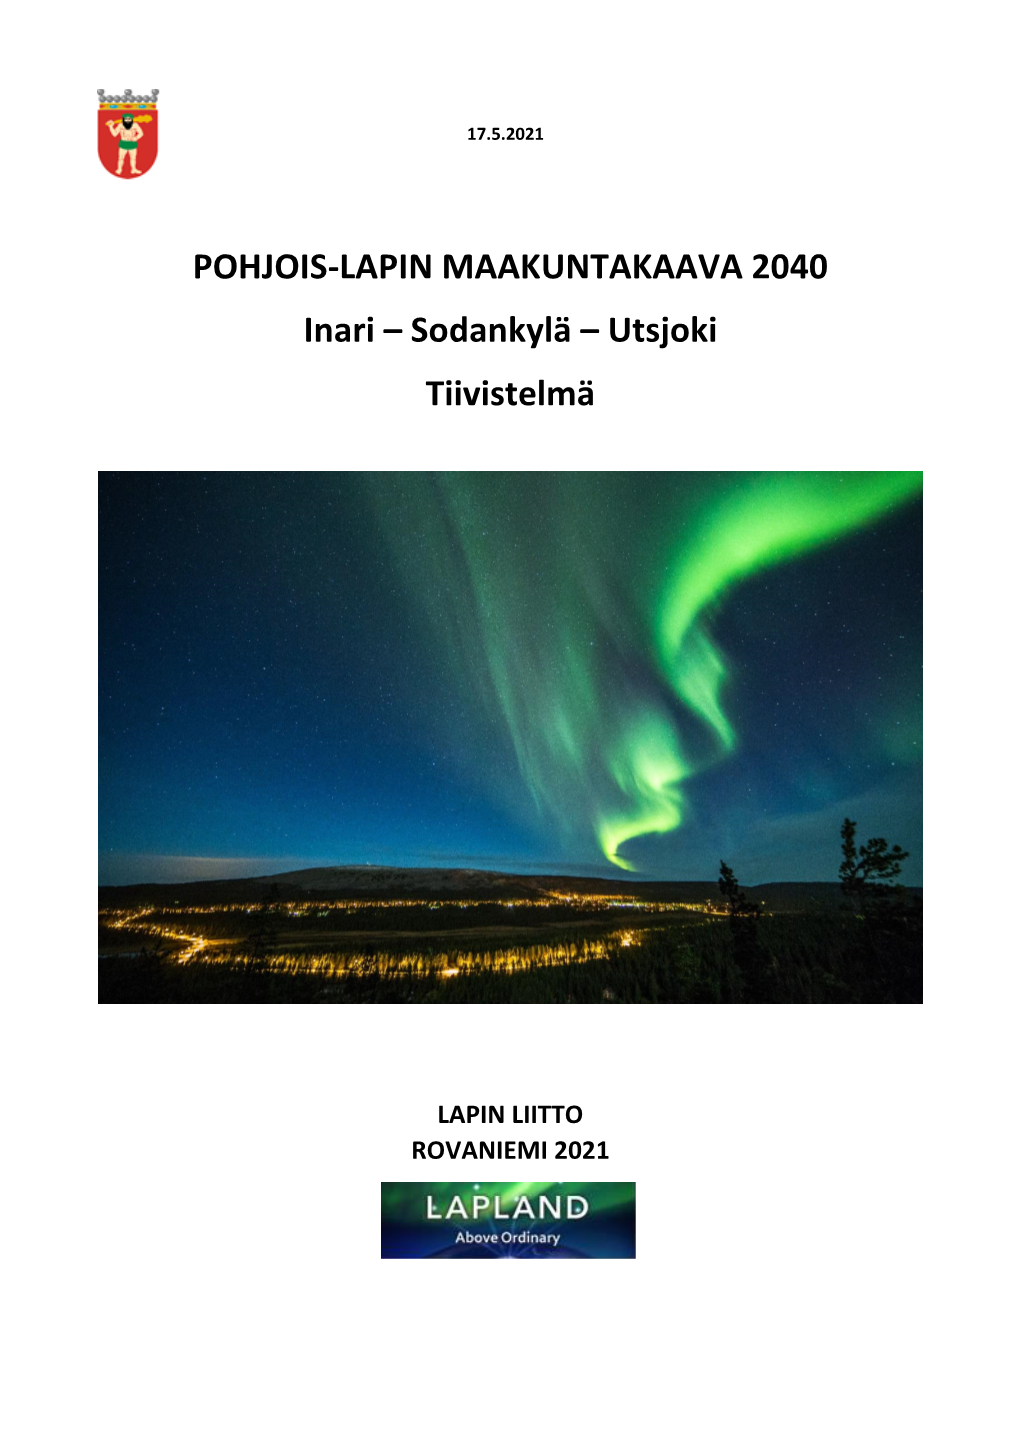 POHJOIS-LAPIN MAAKUNTAKAAVA 2040 Inari – Sodankylä – Utsjoki Tiivistelmä